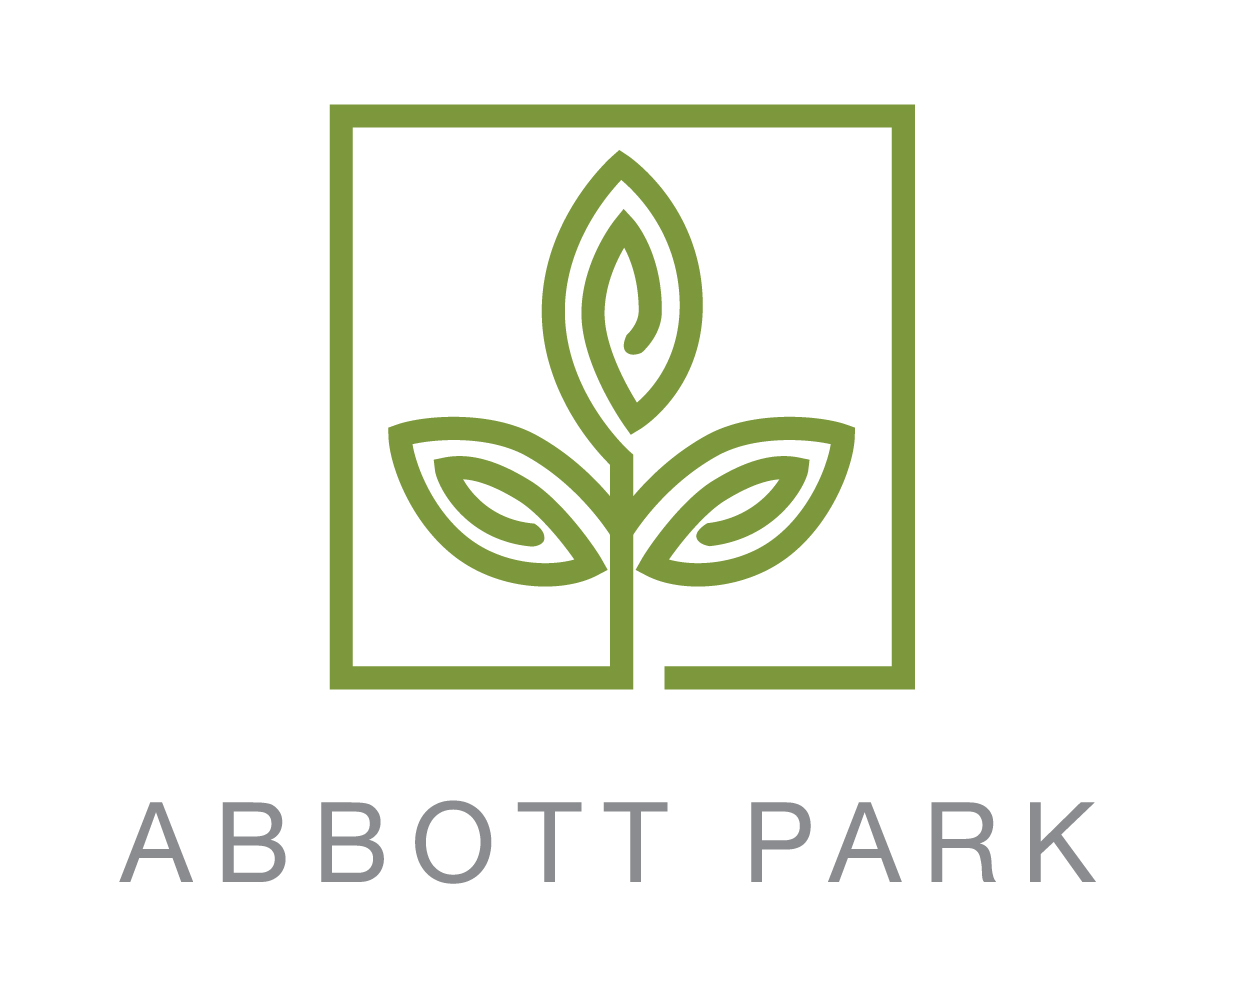 Abbott Park logo